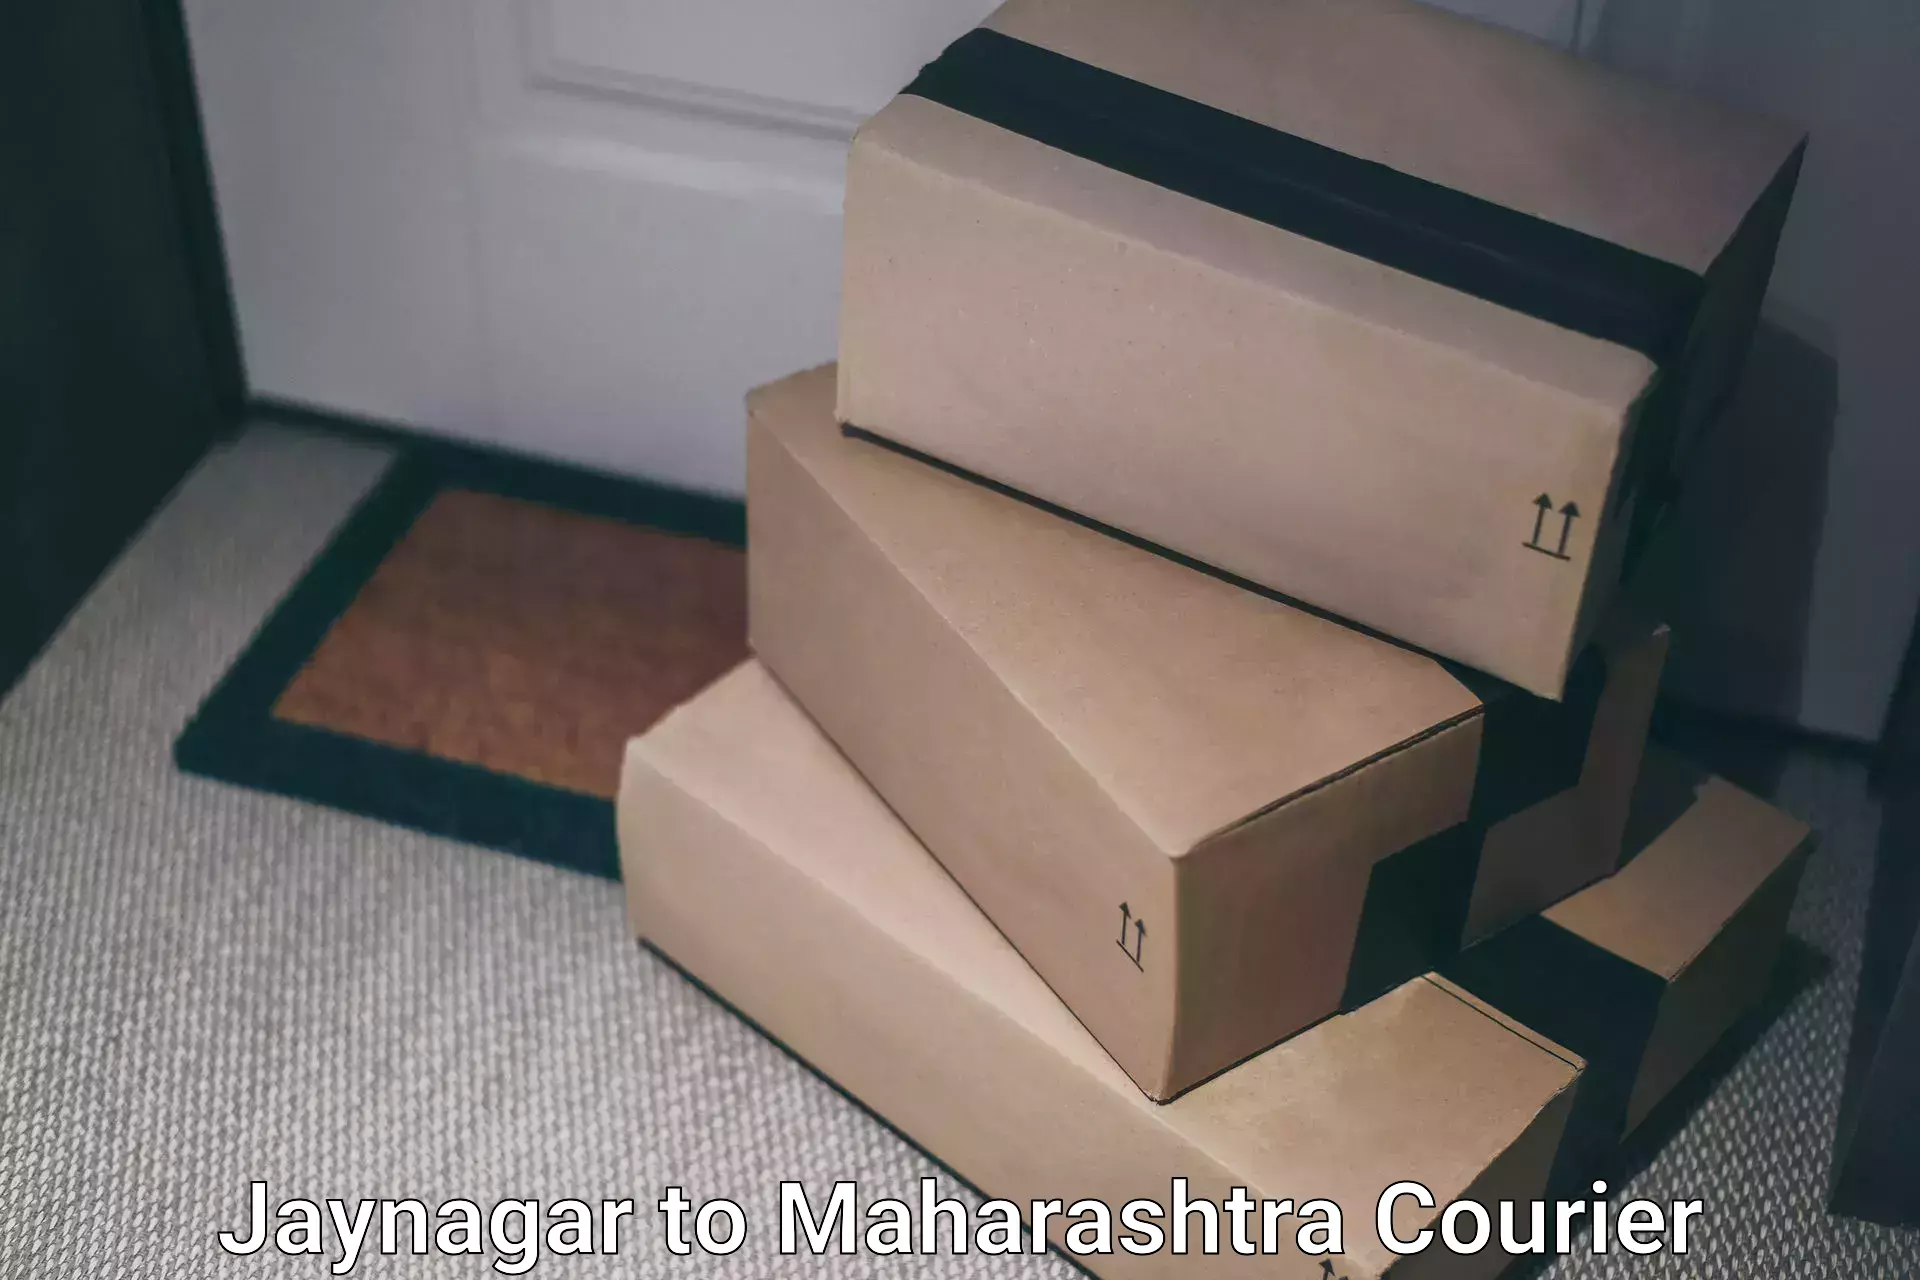 Smart parcel solutions Jaynagar to Maharashtra